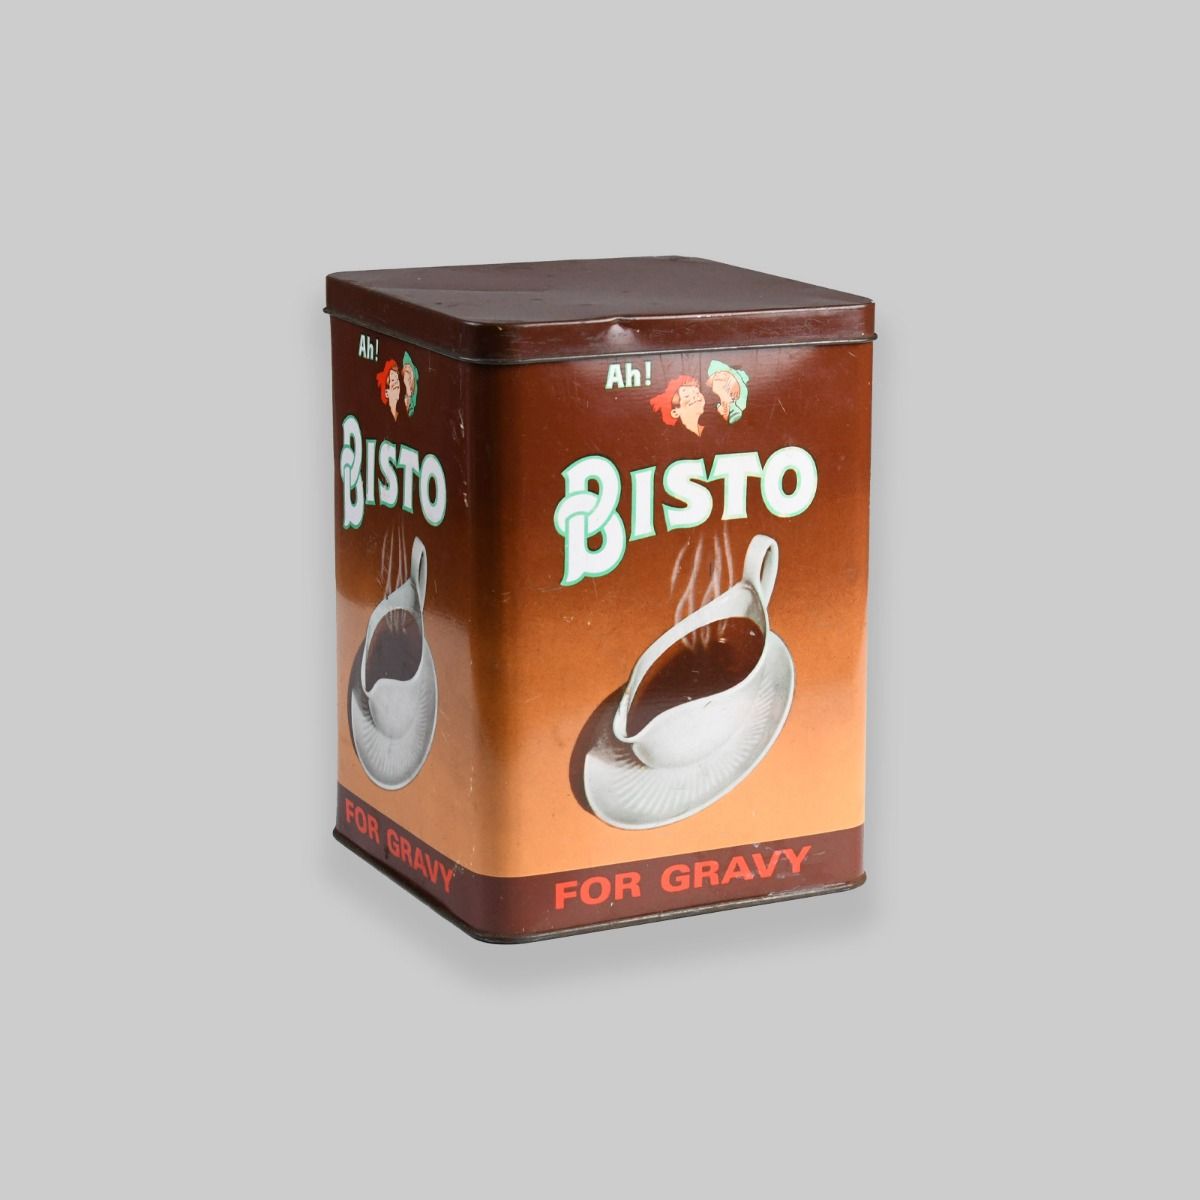 Vintage Bisto Gravy Tin